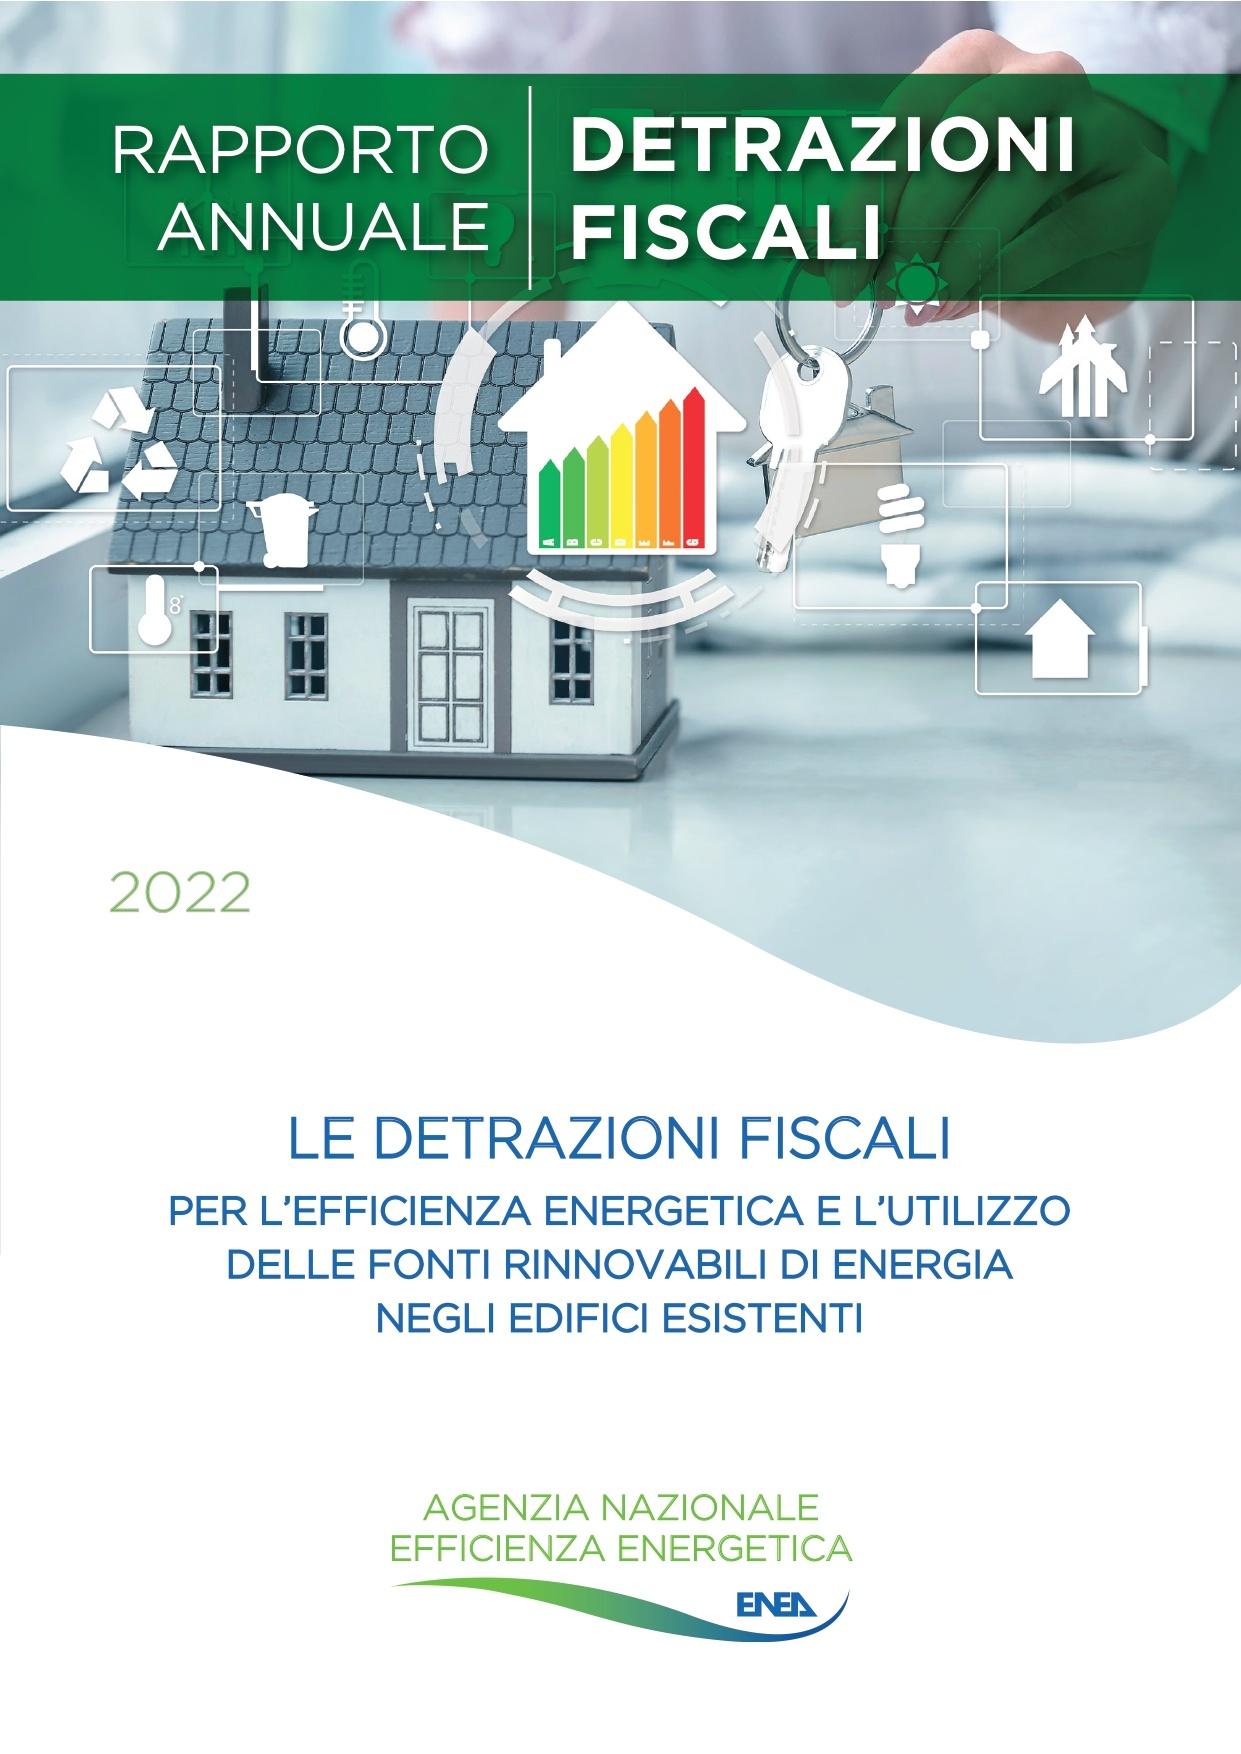 Immagine di copertina del Rapporto annuale sulle detrazioni fiscali 2022